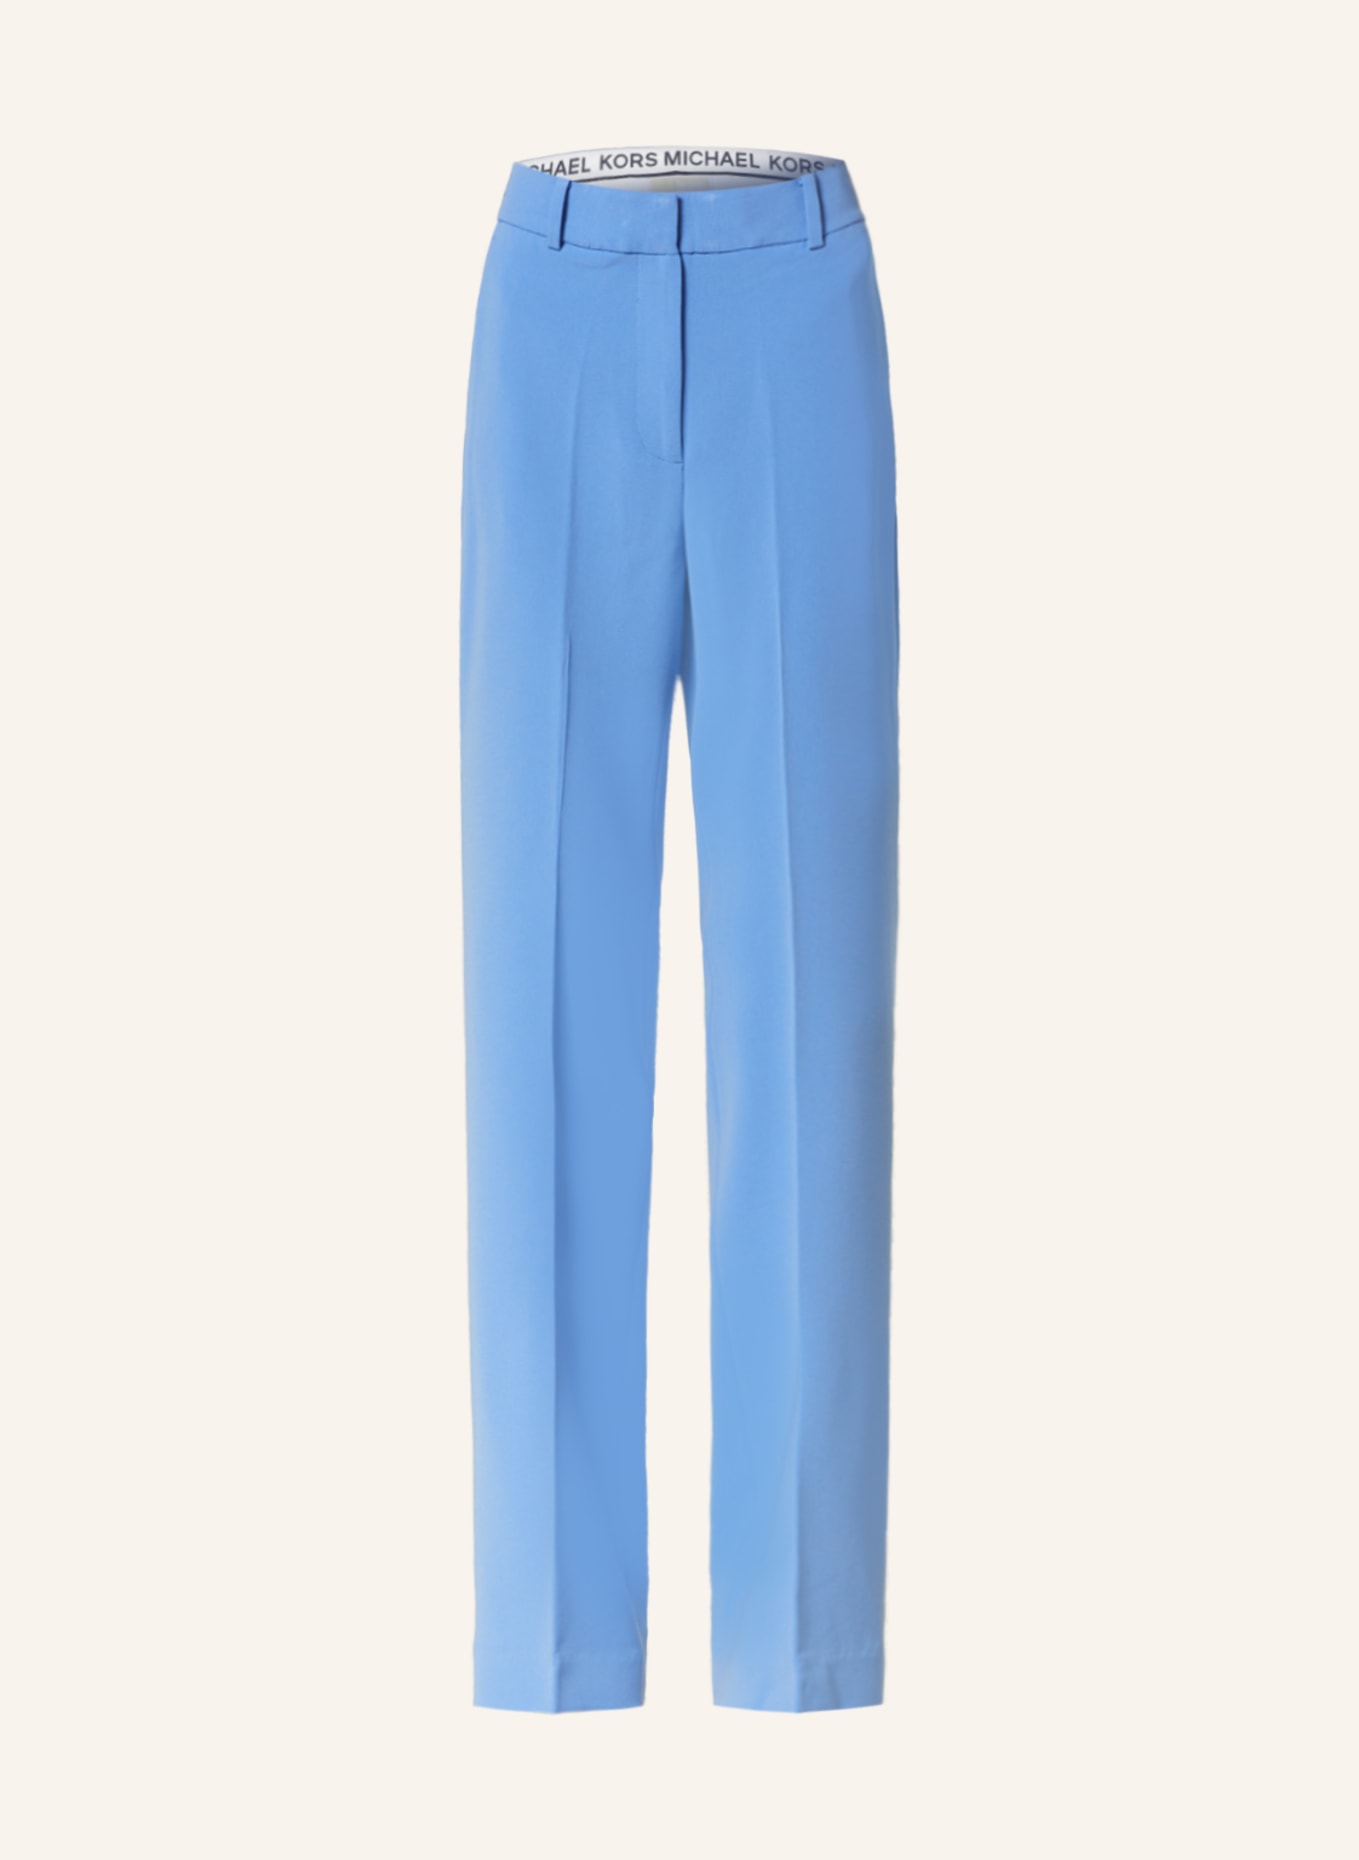 MICHAEL KORS Trousers, Color: LIGHT BLUE (Image 1)